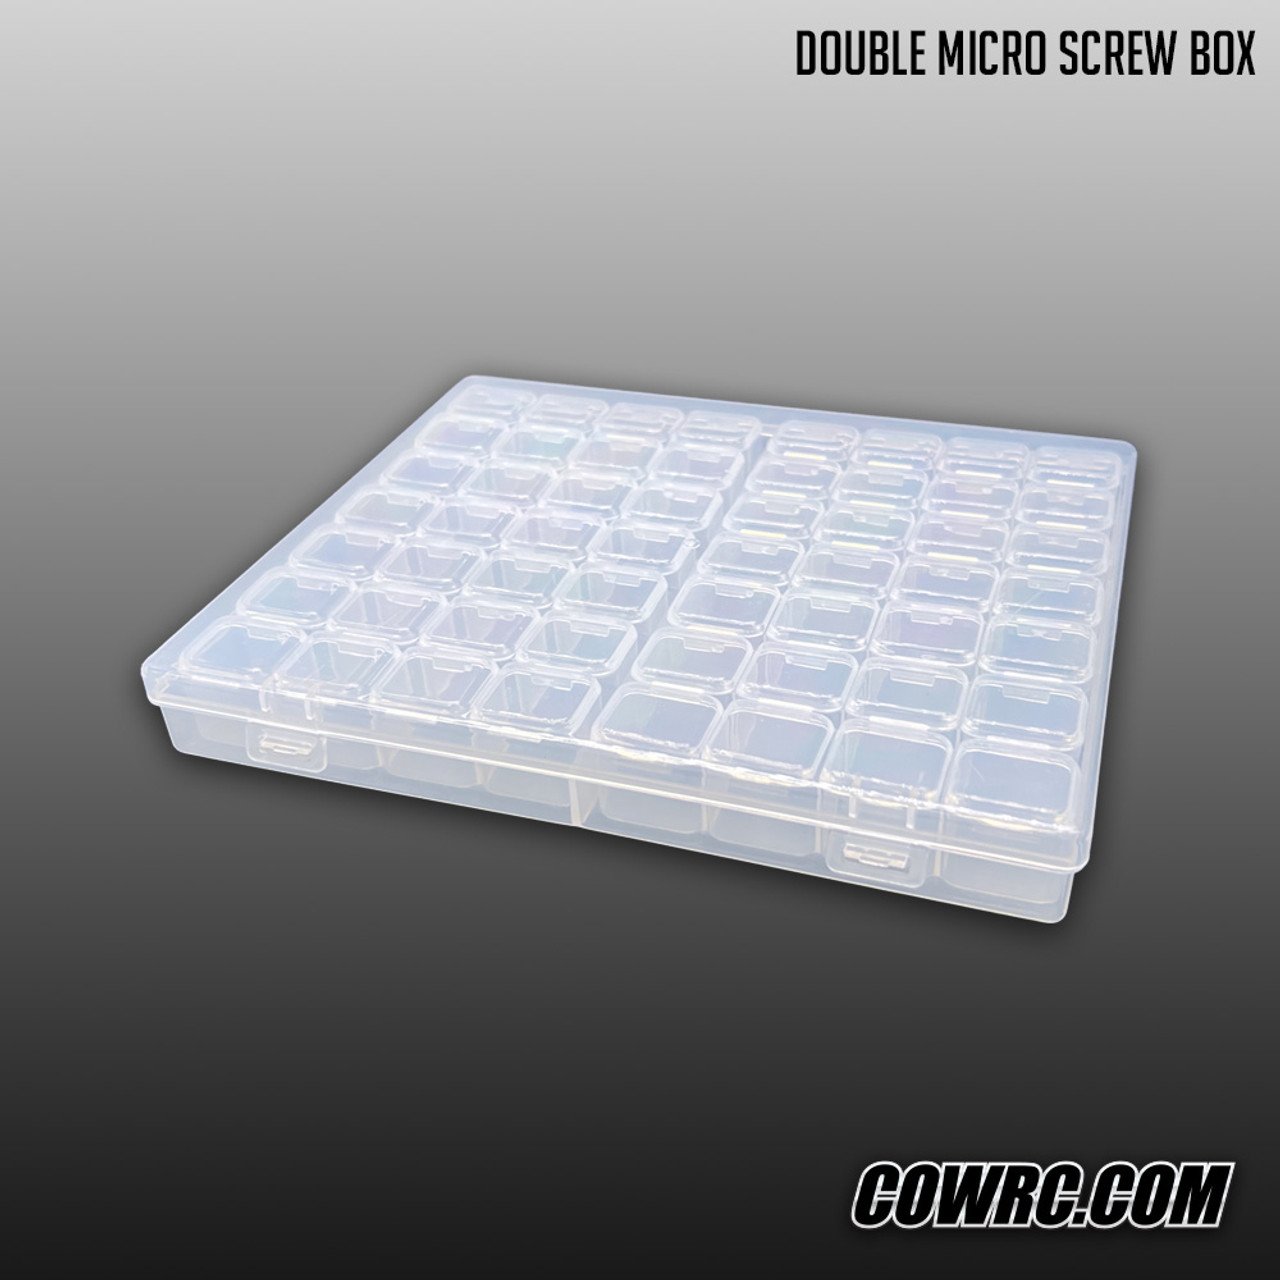 Double Micro Screw Box